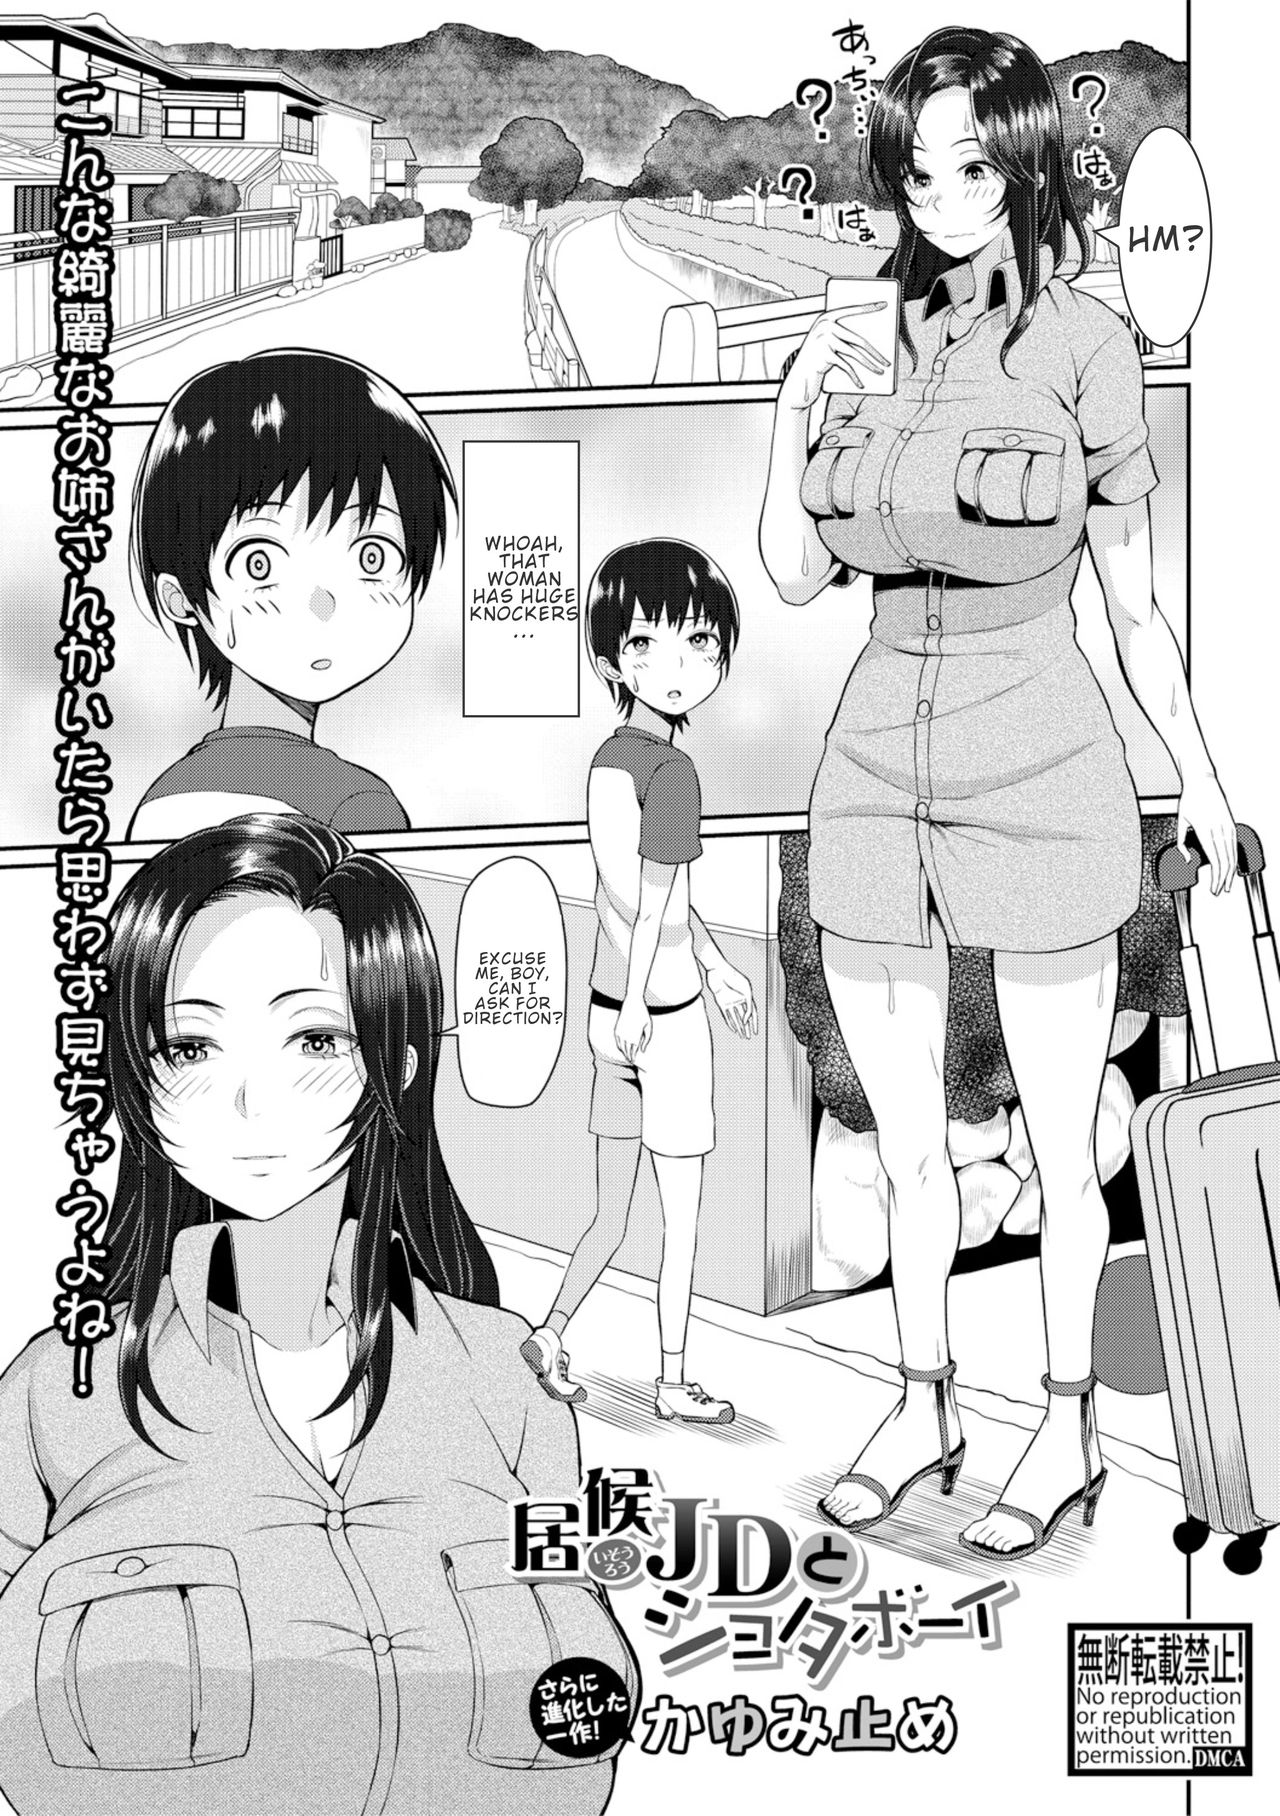 Huge Shota Hentai - Freeloader College Girl And Shota Boy [Kayumidome] - Free Hentai Manga,  Adult Webtoon, Doujinshi Manga and Mature Comics